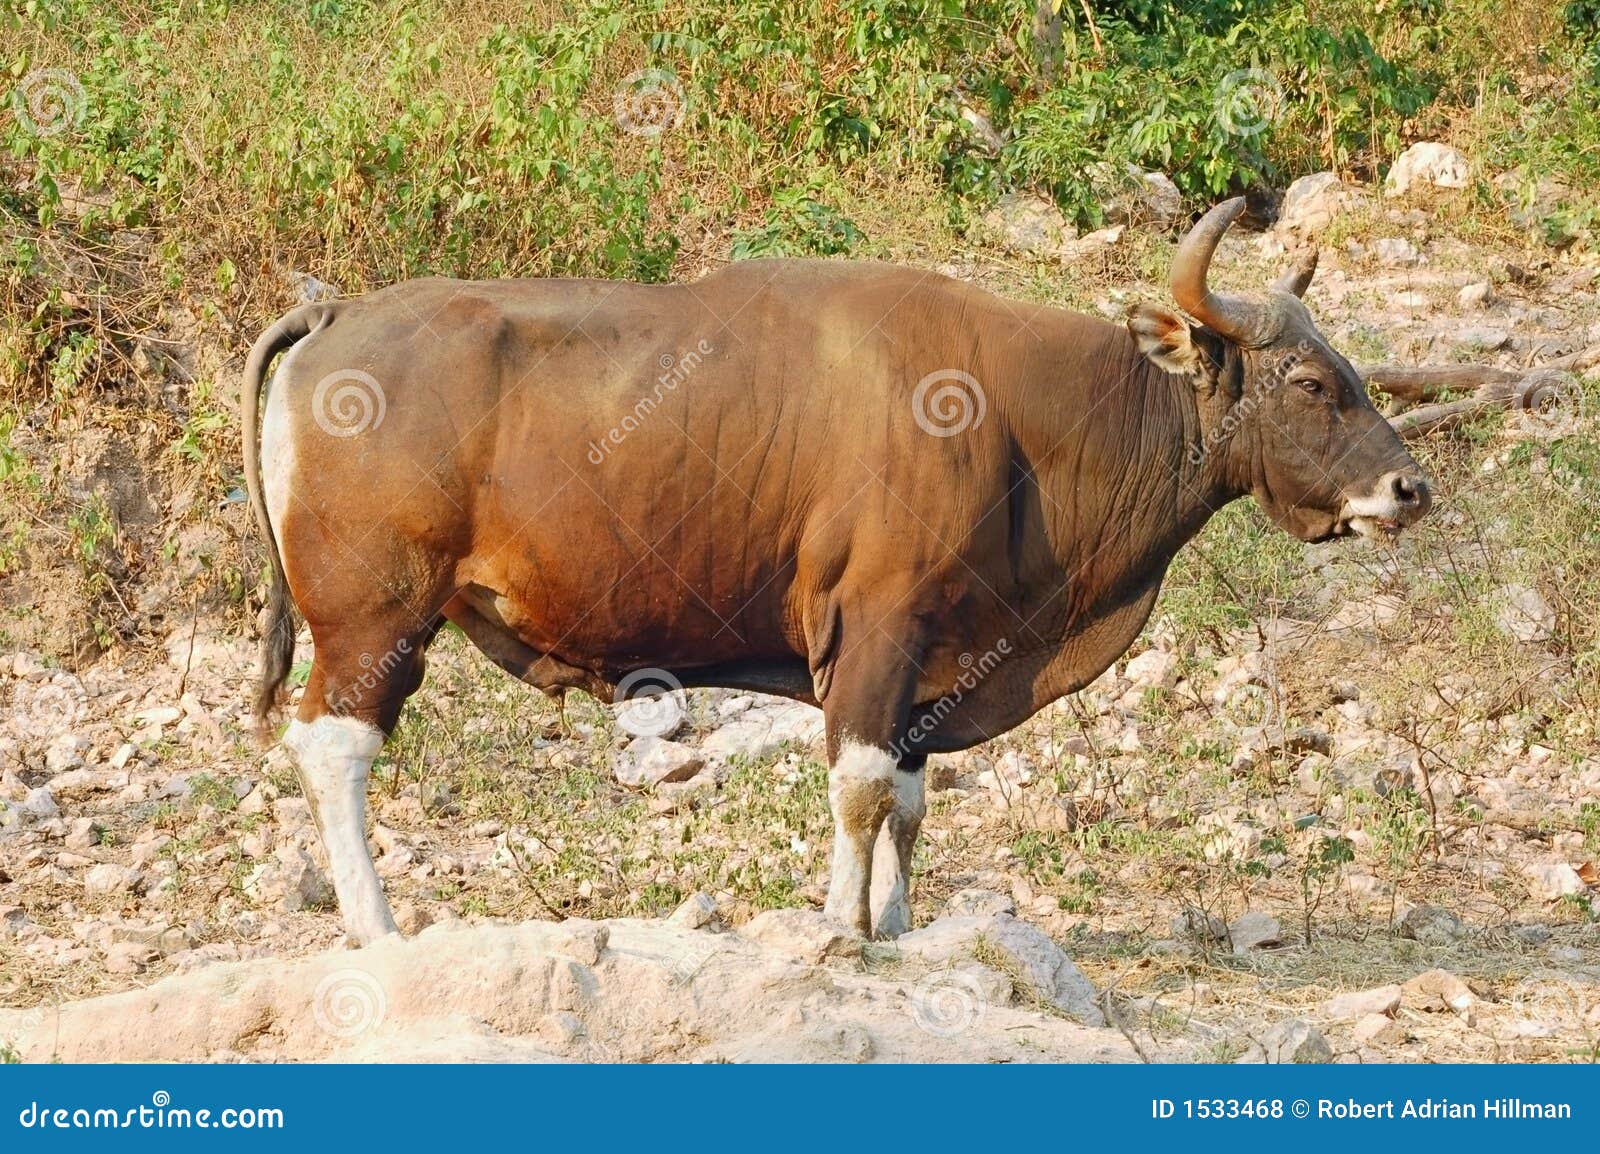 banteng bull